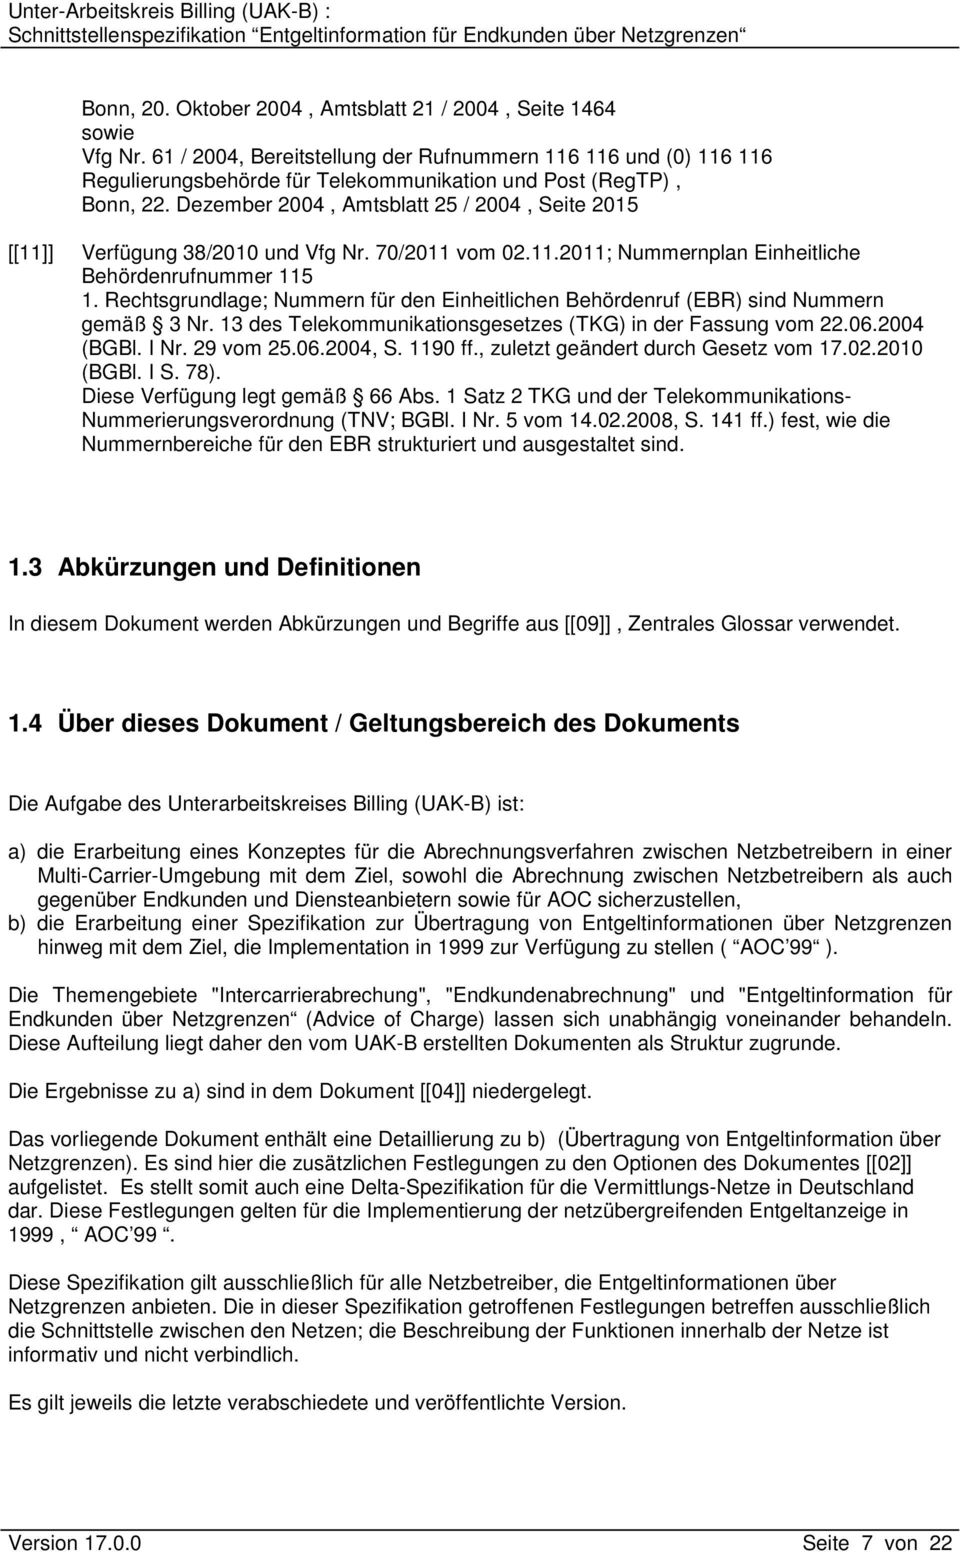 Dezember 2004, Amtsblatt 25 / 2004, Seite 2015 [[11]] Verfügung 38/2010 und Vfg Nr. 70/2011 vom 02.11.2011; Nummernplan Einheitliche Behördenrufnummer 115 1.